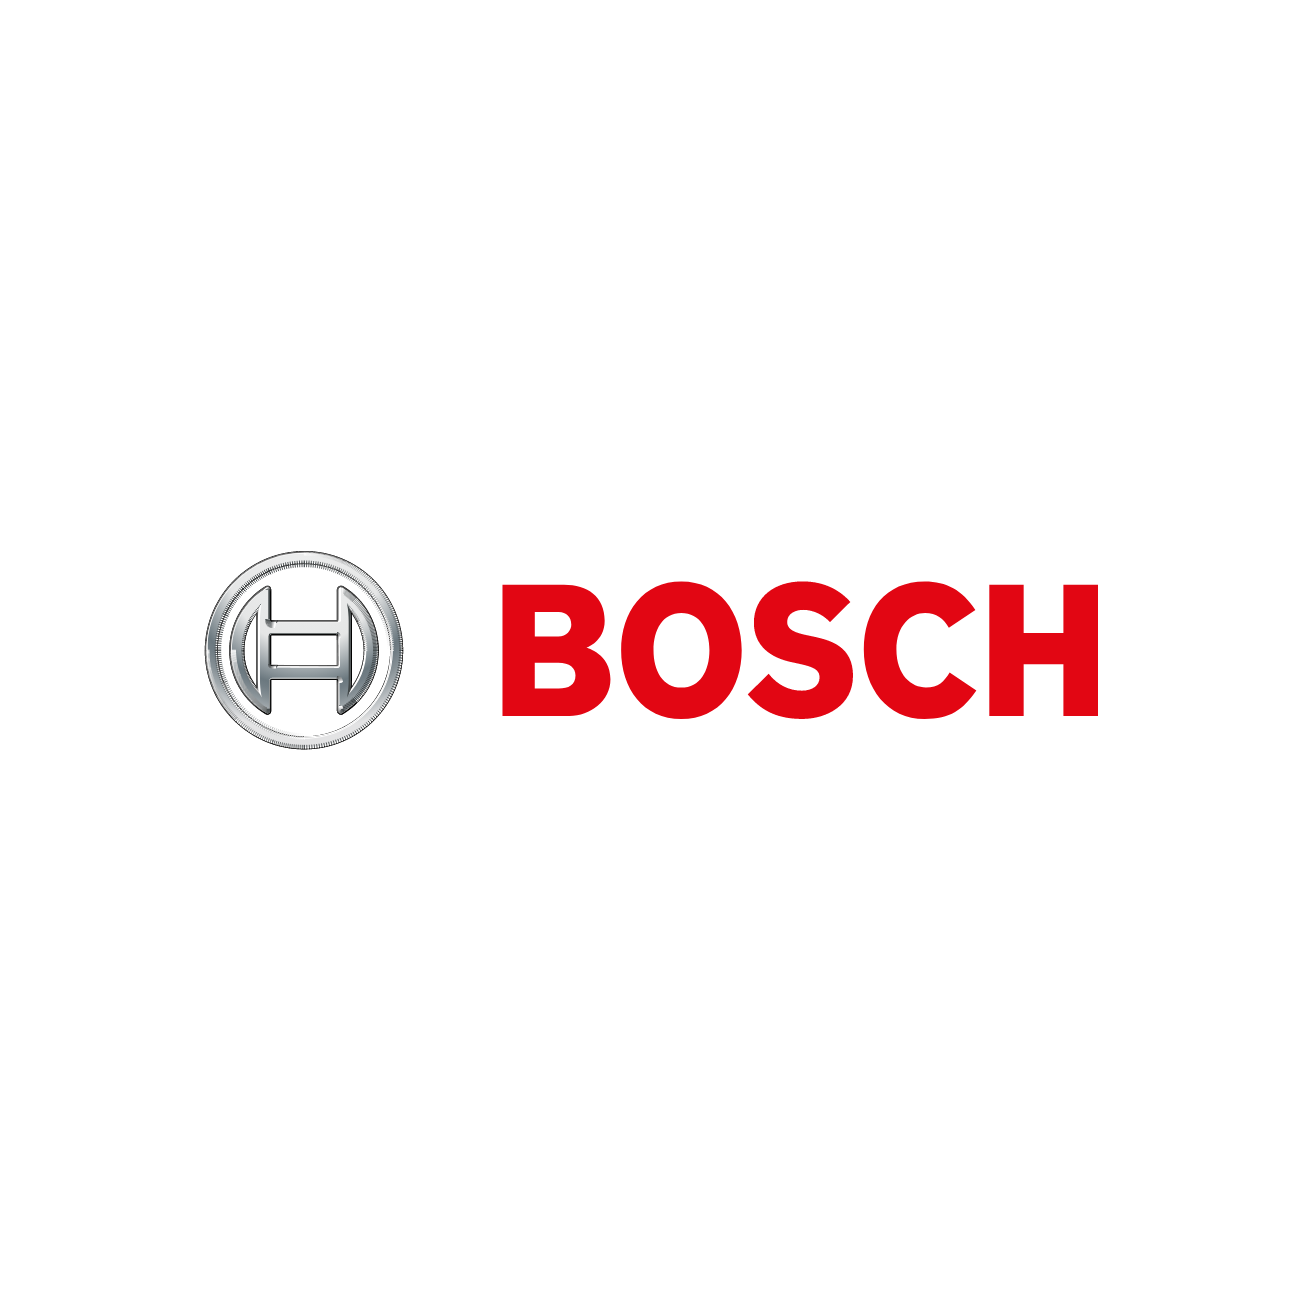 TopBrands/Bosch.png